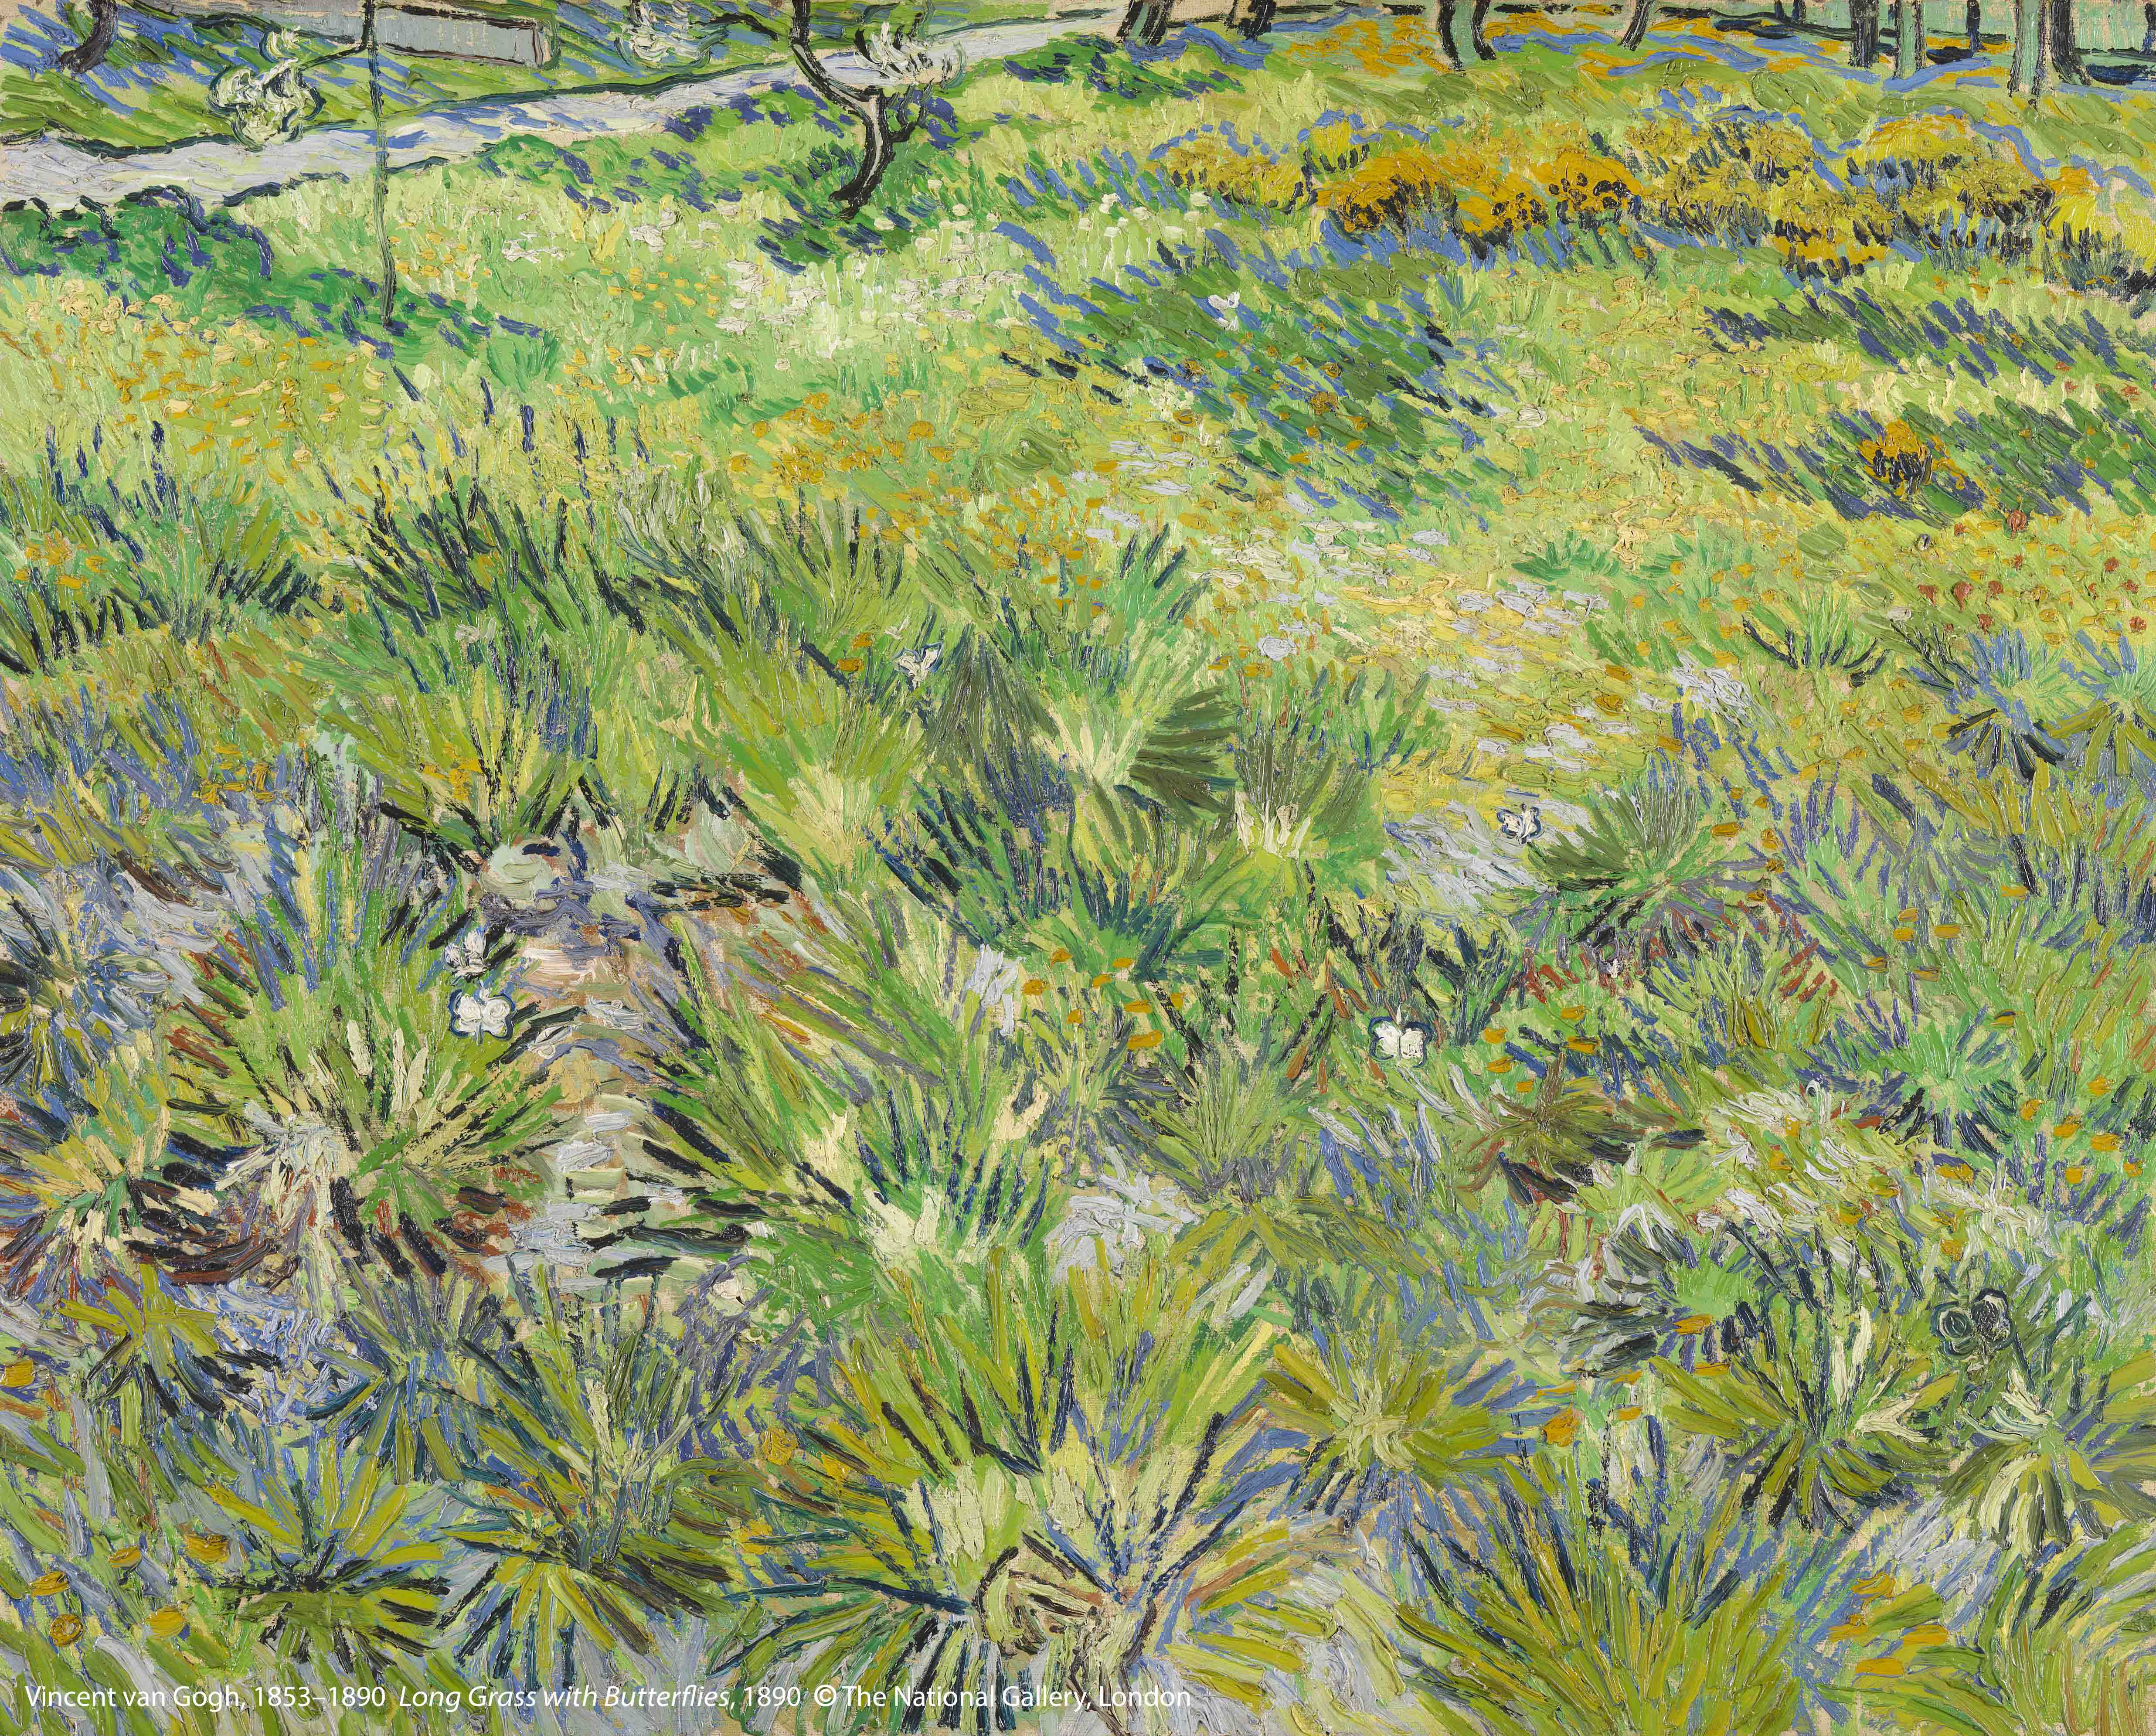 文 森 ． 梵 谷 （ 1 8 5 3 – 1 8 9 0 ） 作 品 〈 長 草 地 與 蝴 蝶 〉 ， 1 8 9 0 年 創 作 。 圖 片 版 權 ： 英 國 國 家 藝 廊 